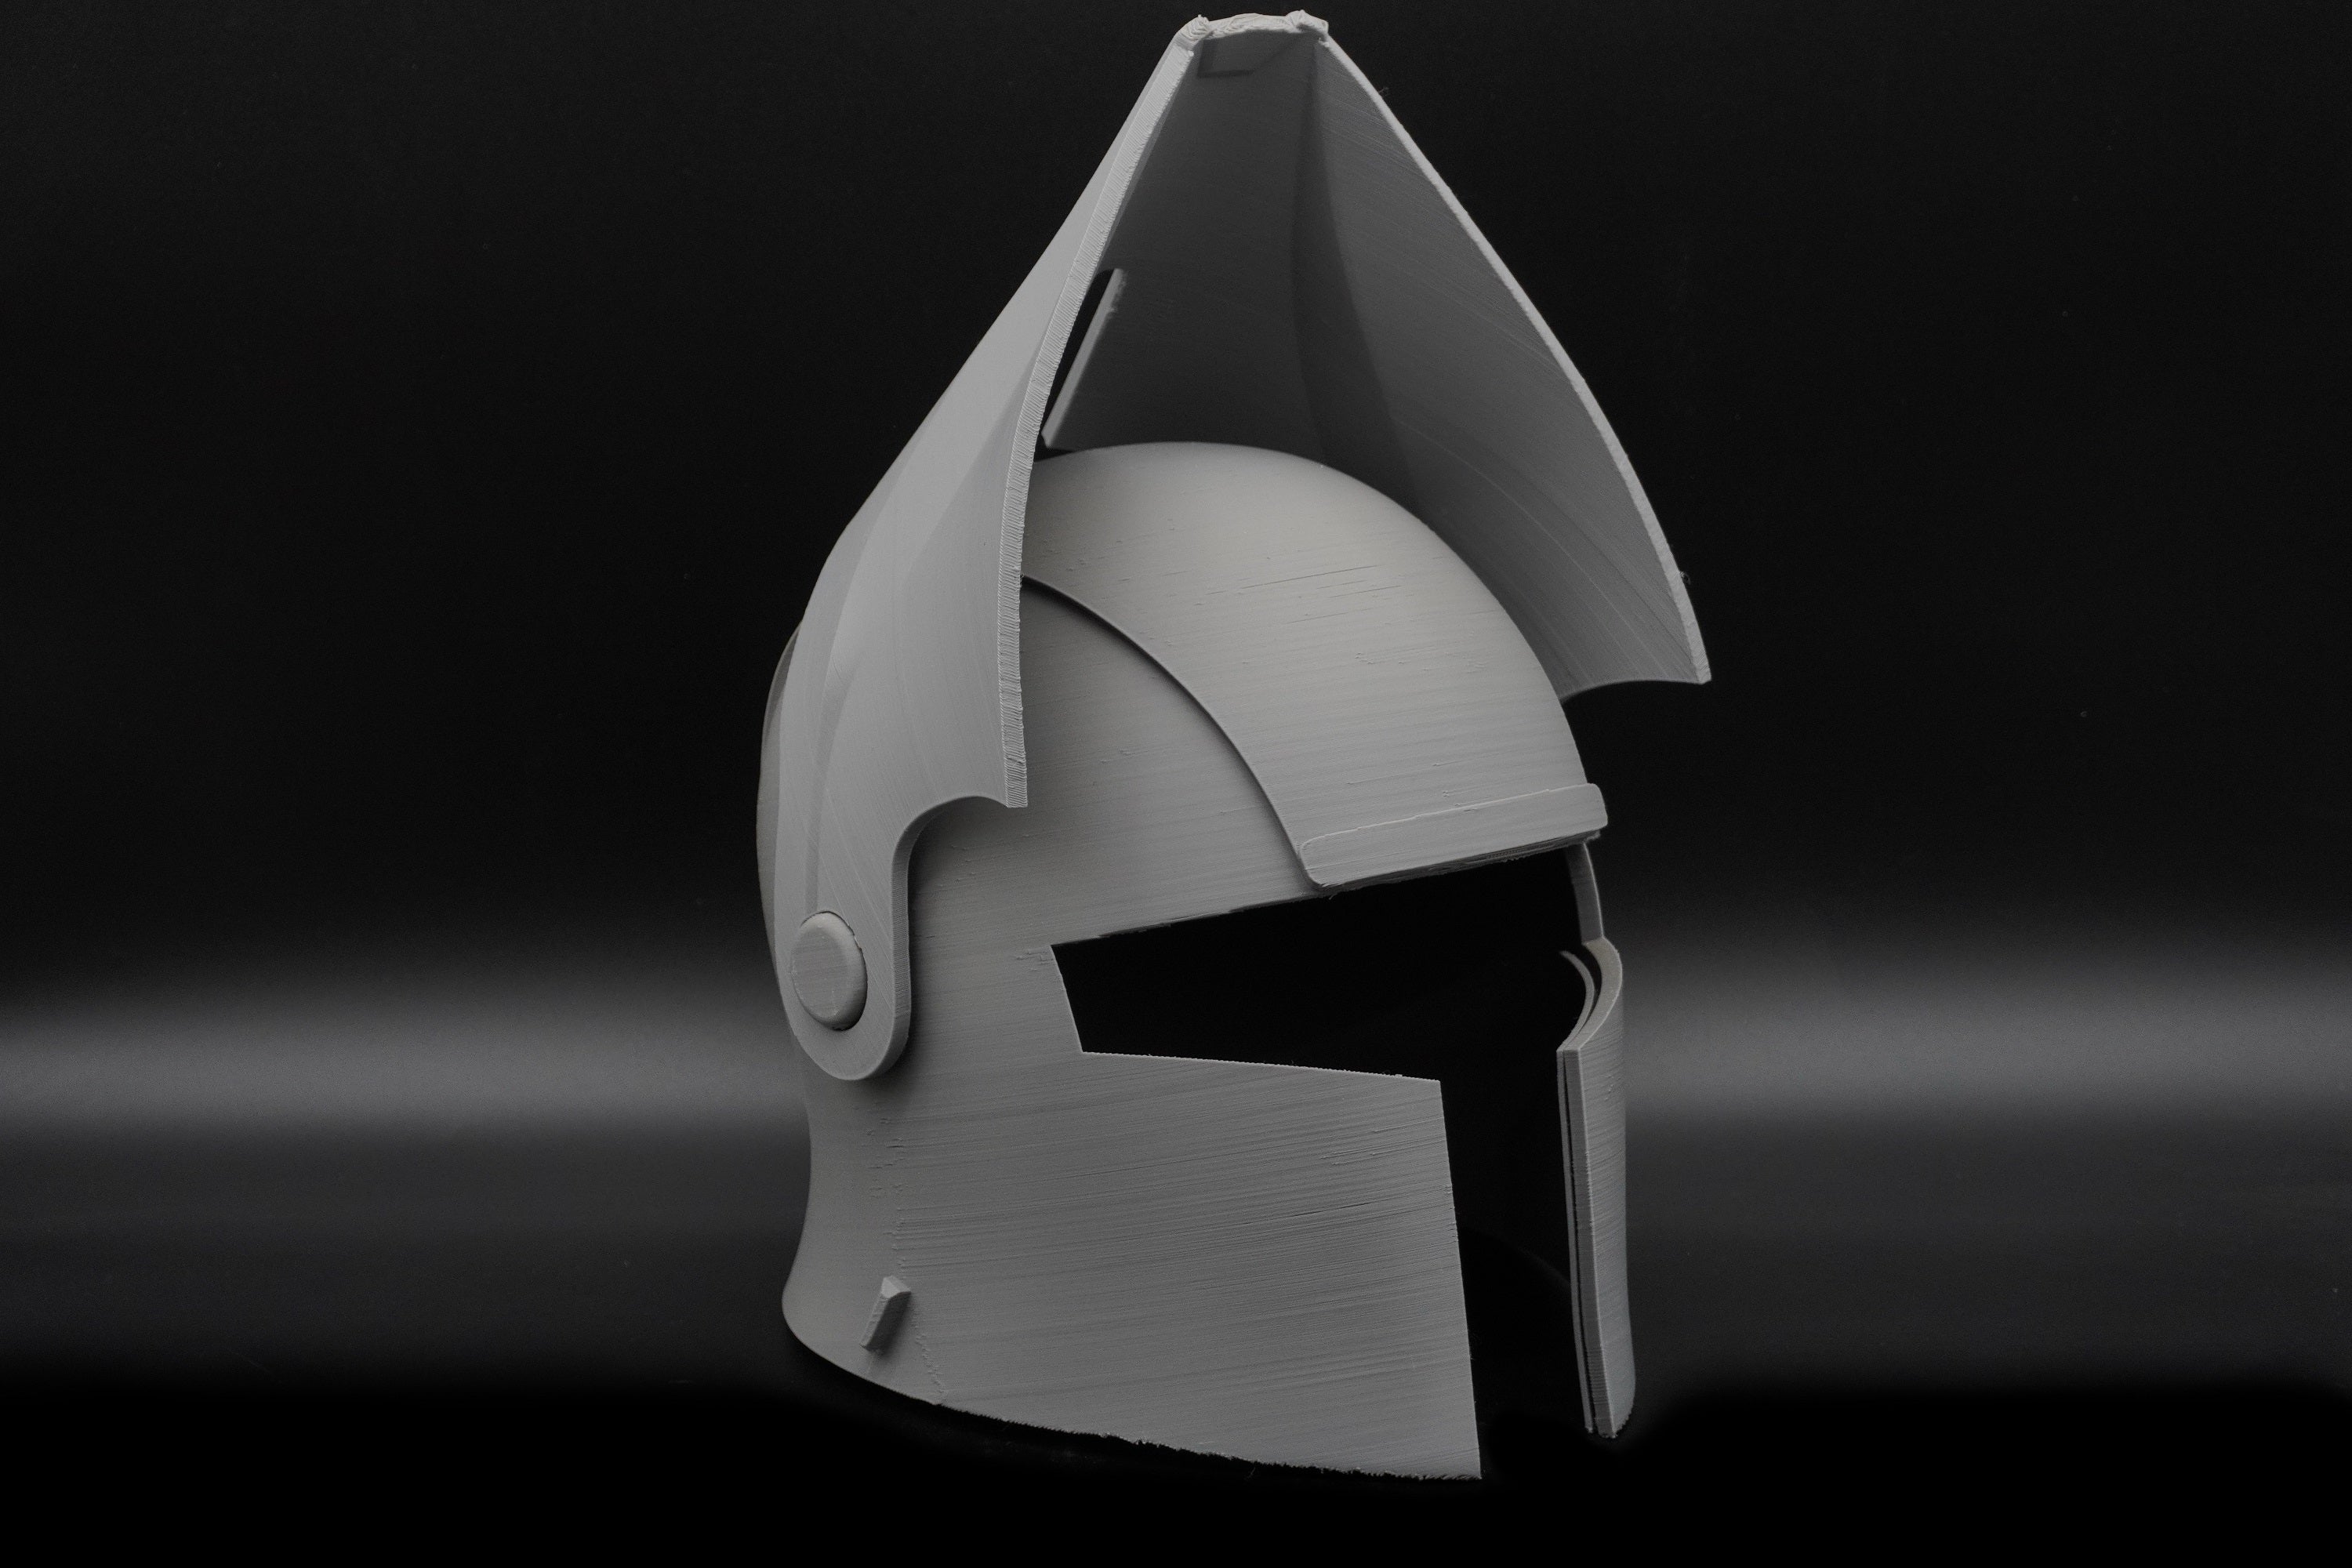 Bartok Medieval Republic Commando Helmet - DIY